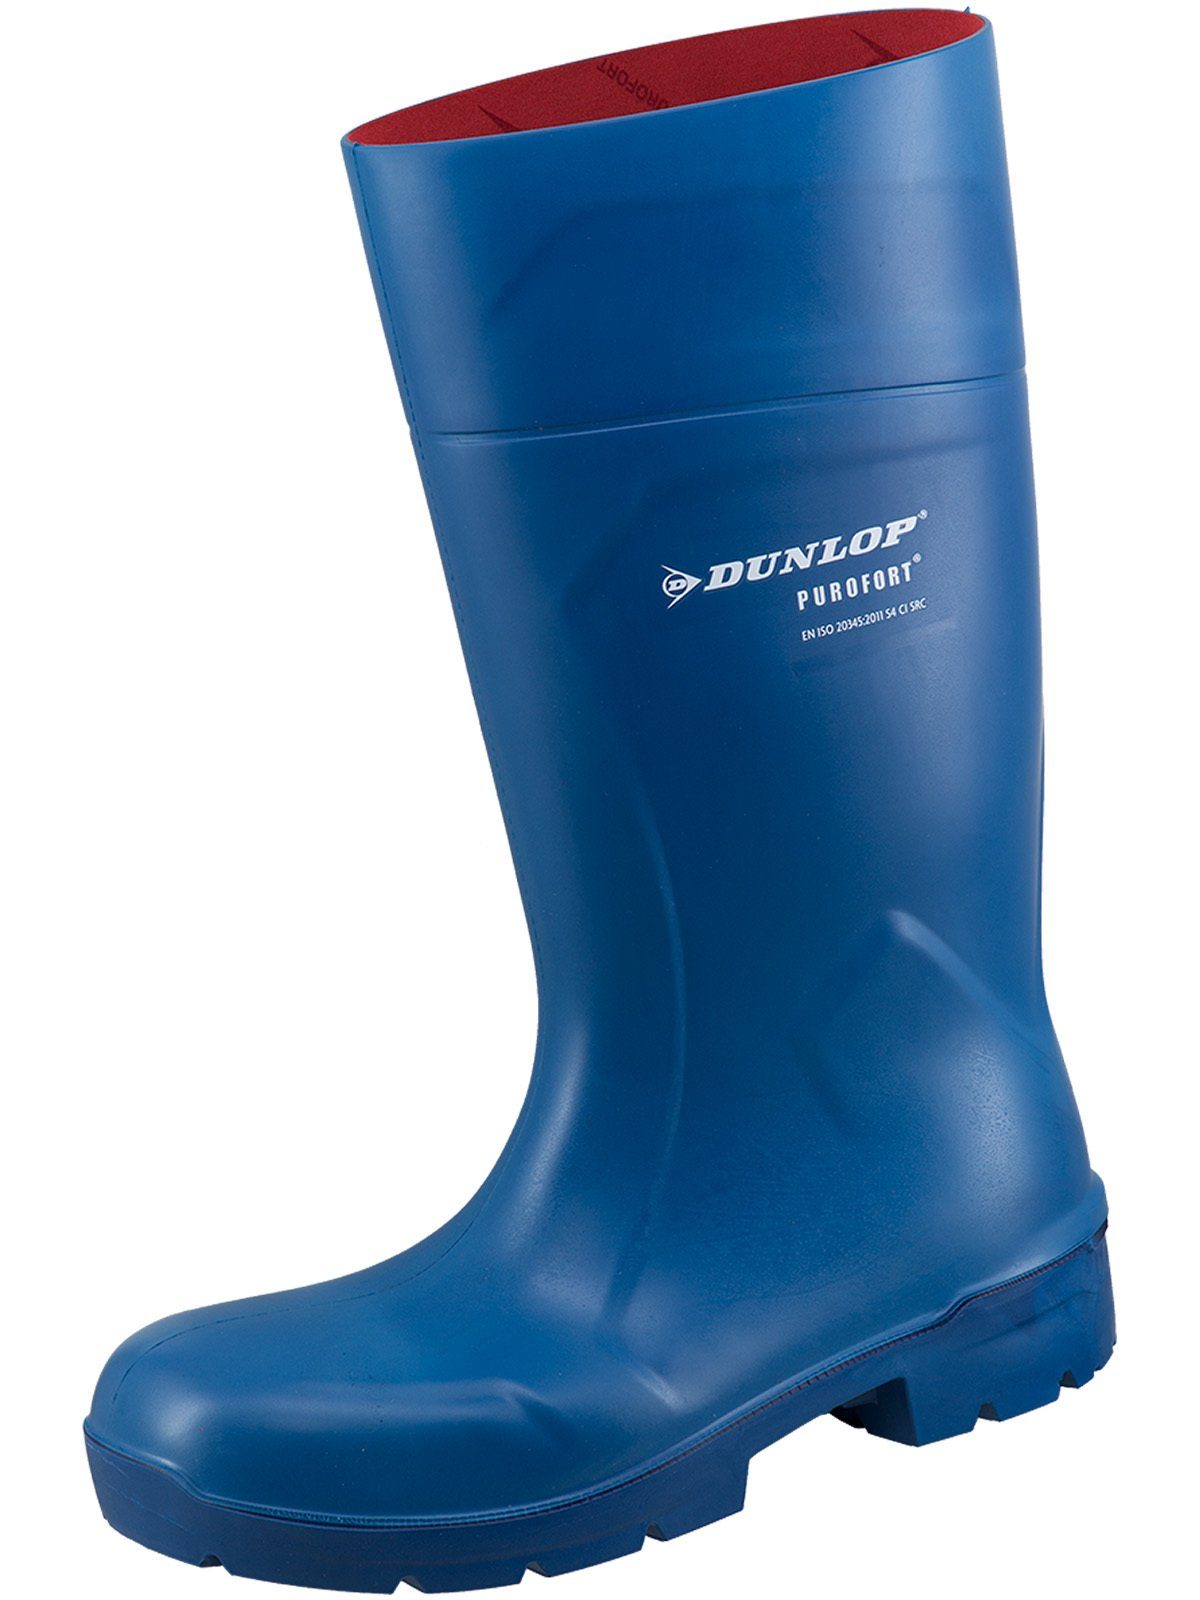 S4 Dunlop_Workwear Stiefel Dunlop blau MultiGrip safety